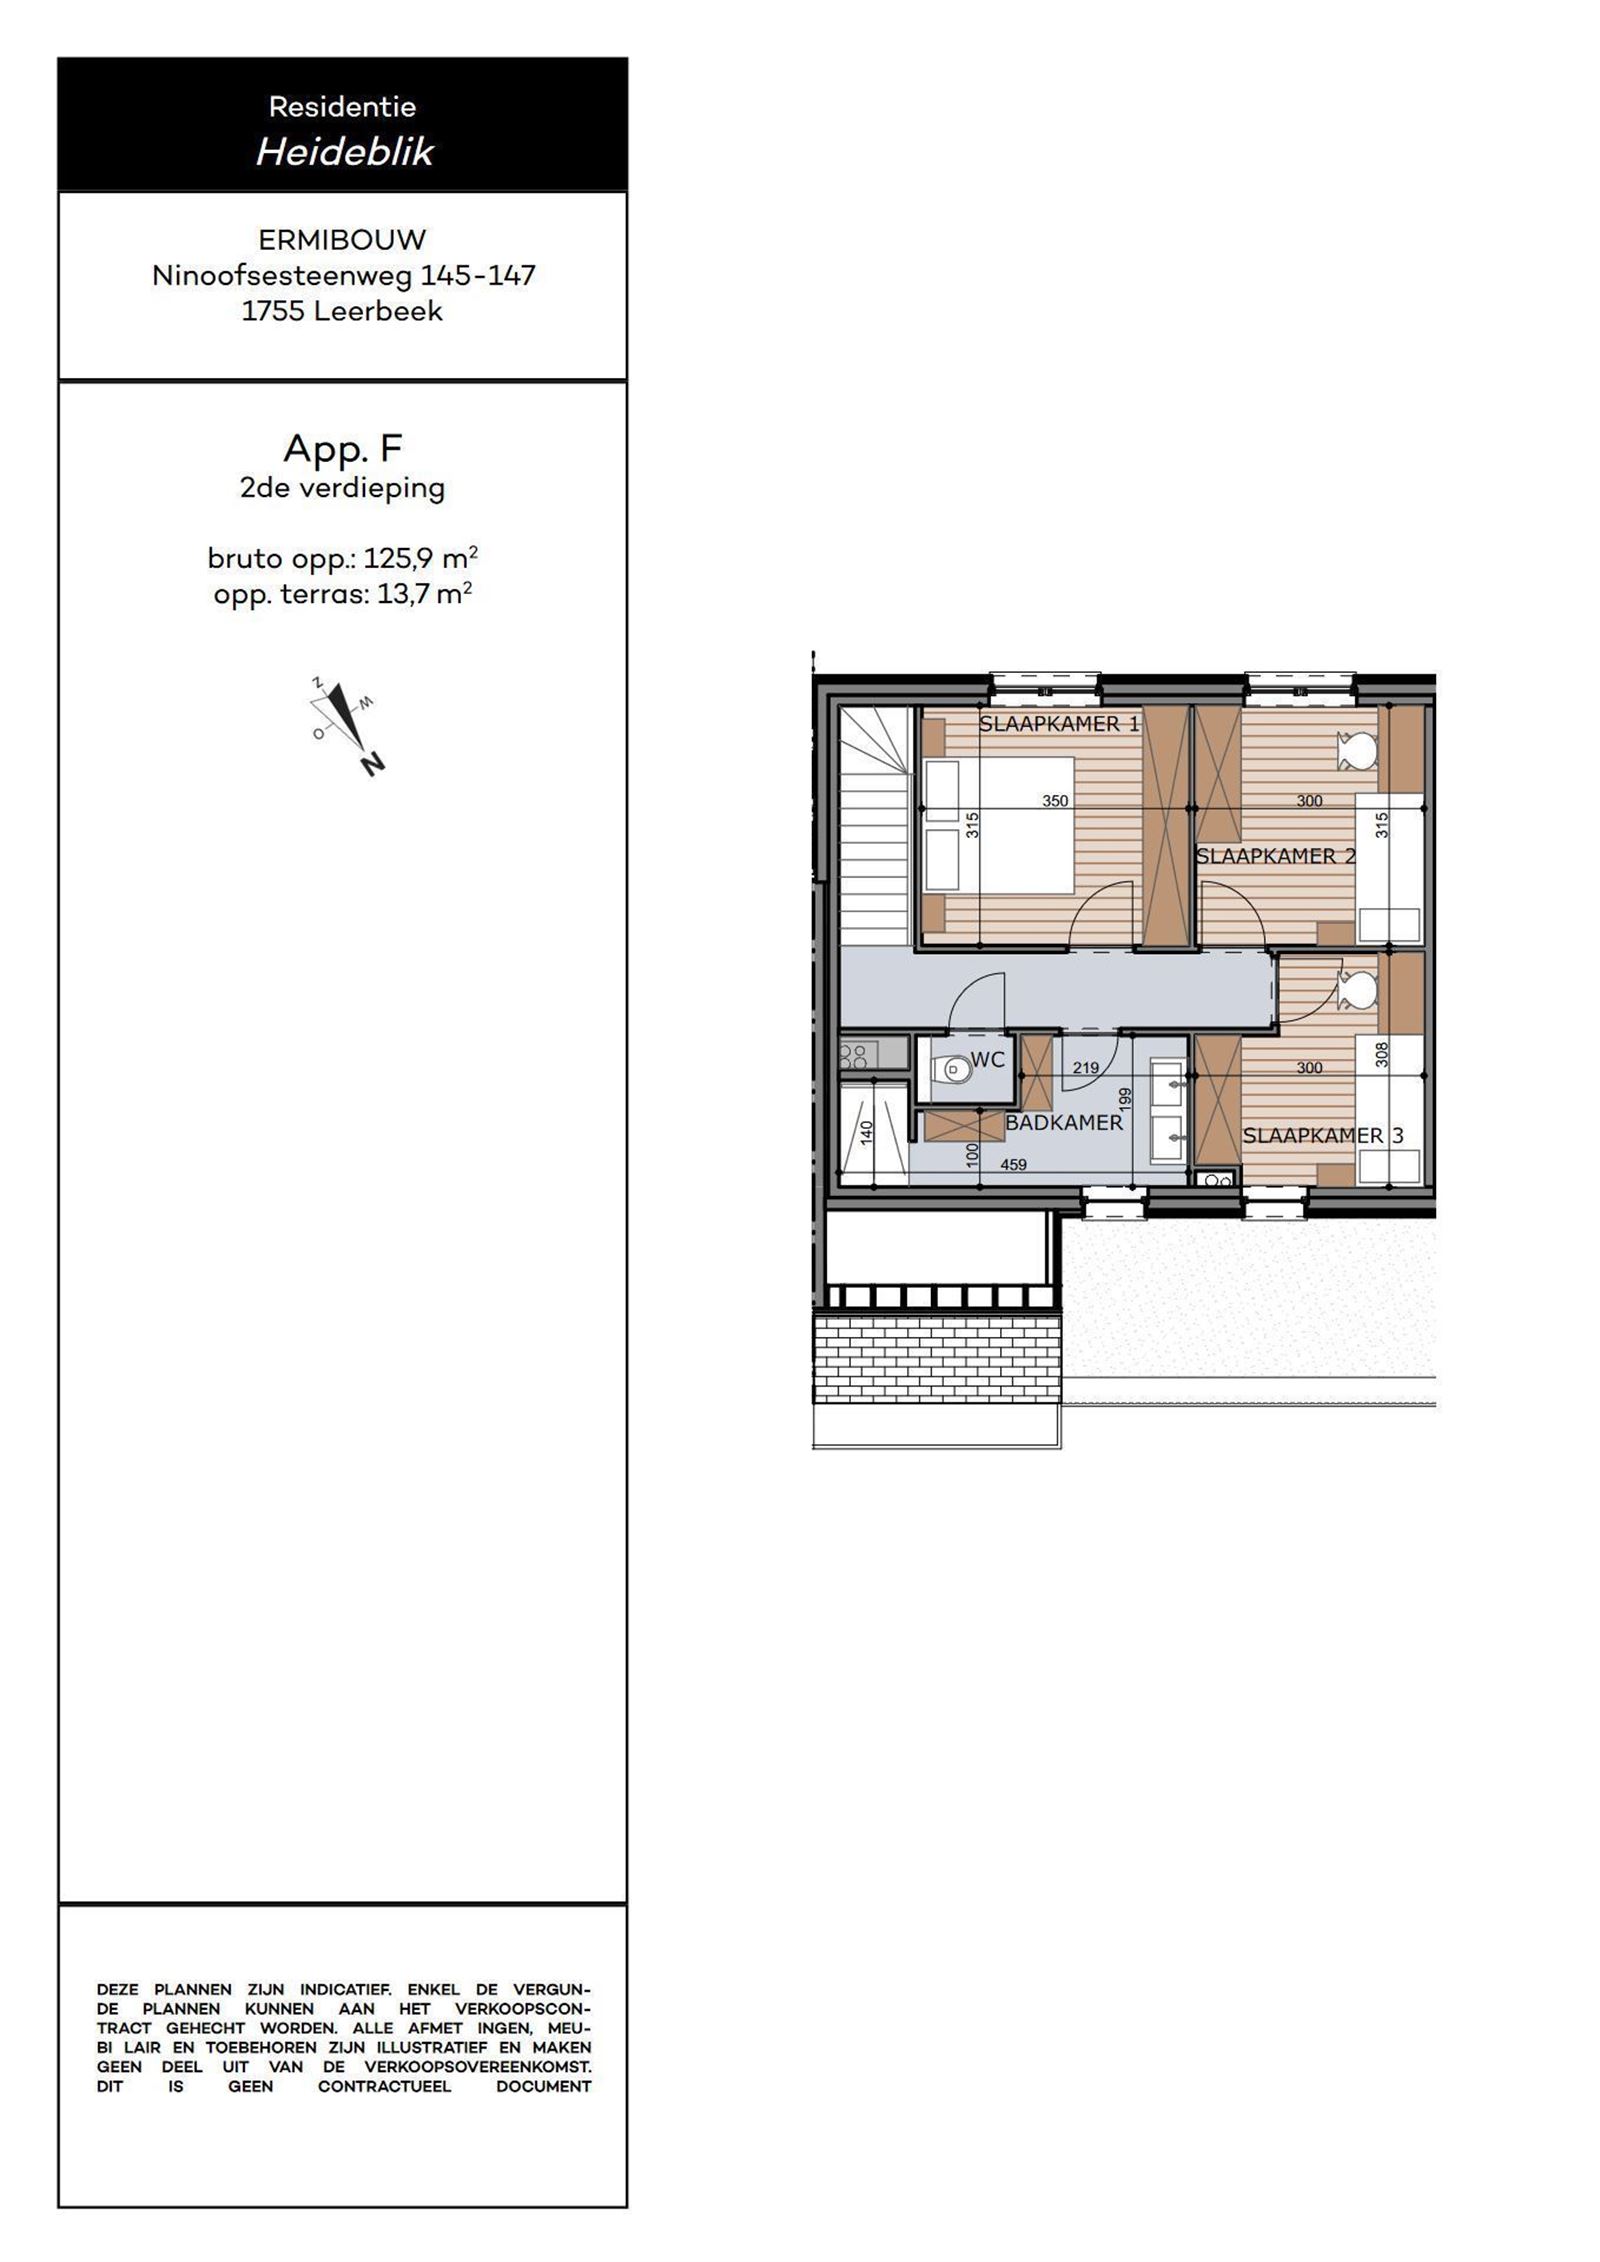 Duplex-appartement met 3 slaapkamers, terras,  parkeerplaats en kelder foto 17